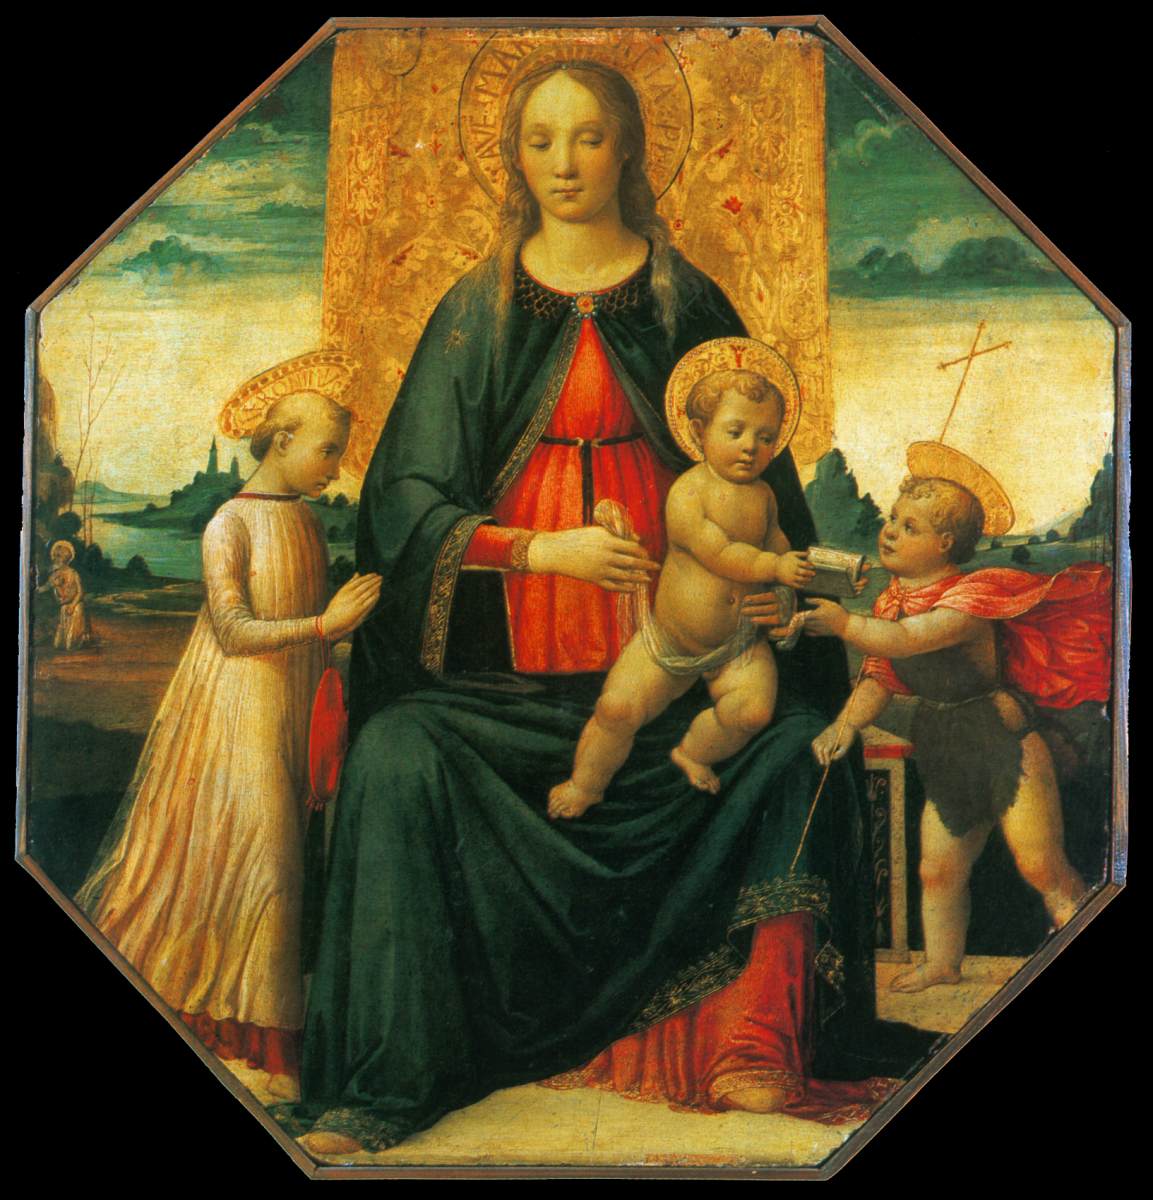 La vierge et l'enfant avec le bébé San Juan Bautista et le jeune San Jerónimo